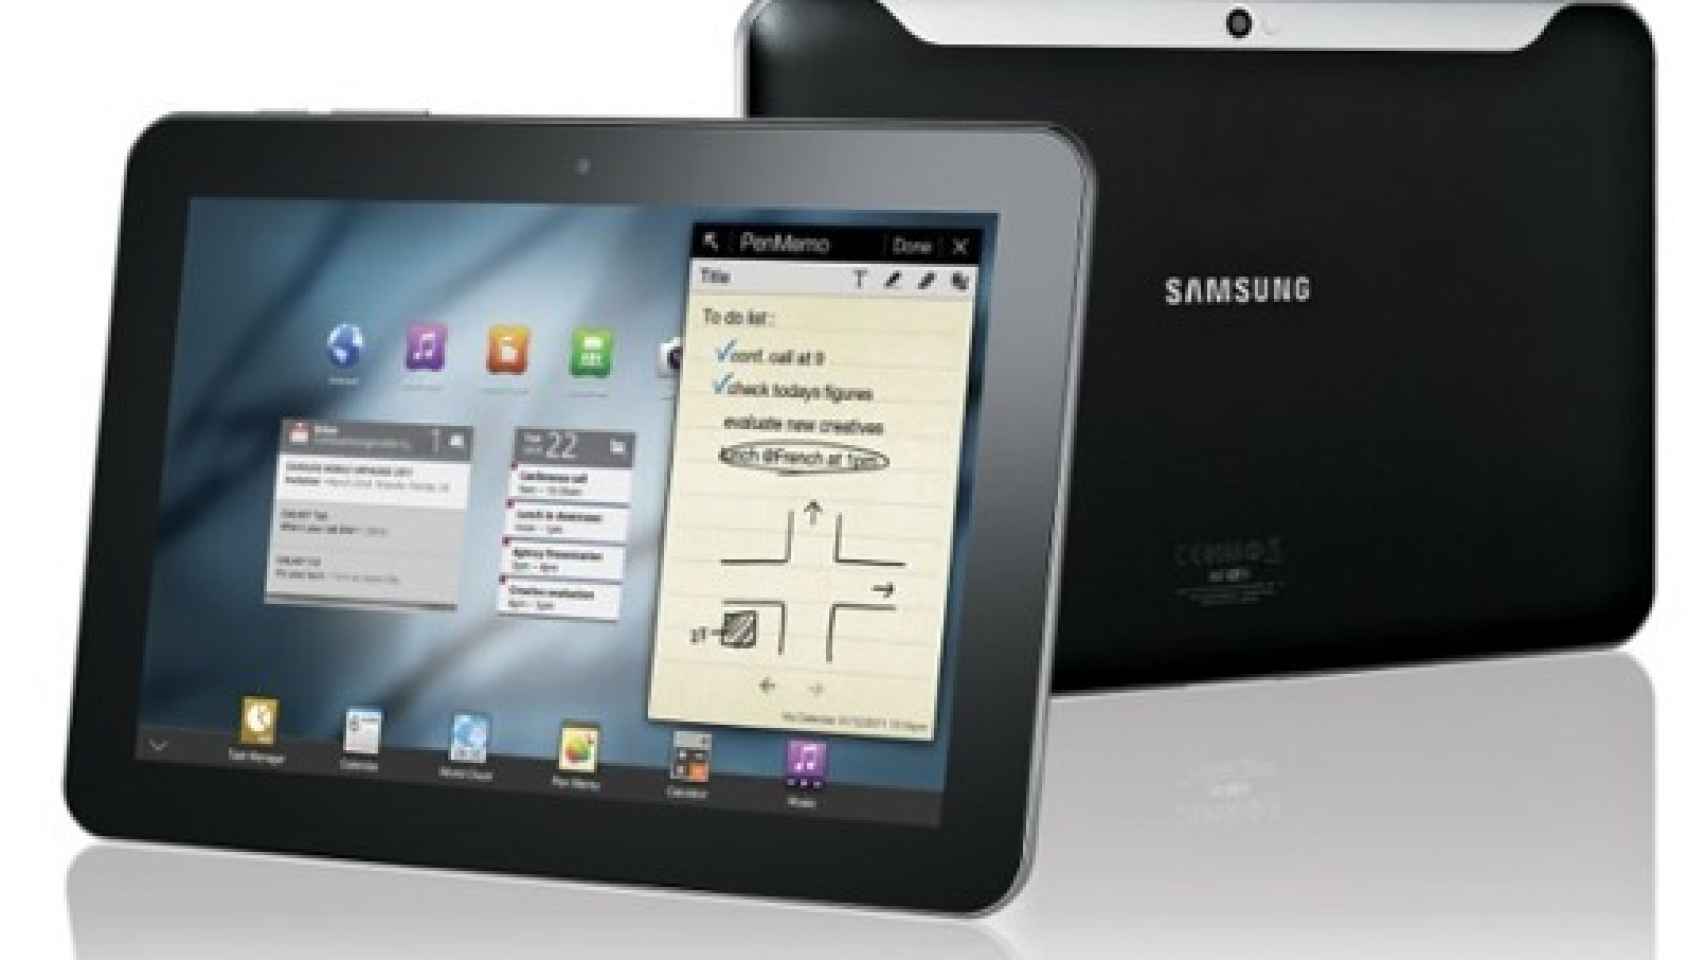 Samsung Galaxy Tab 8.9 y nueva Tab 10.1 presentadas: Información y fotografías